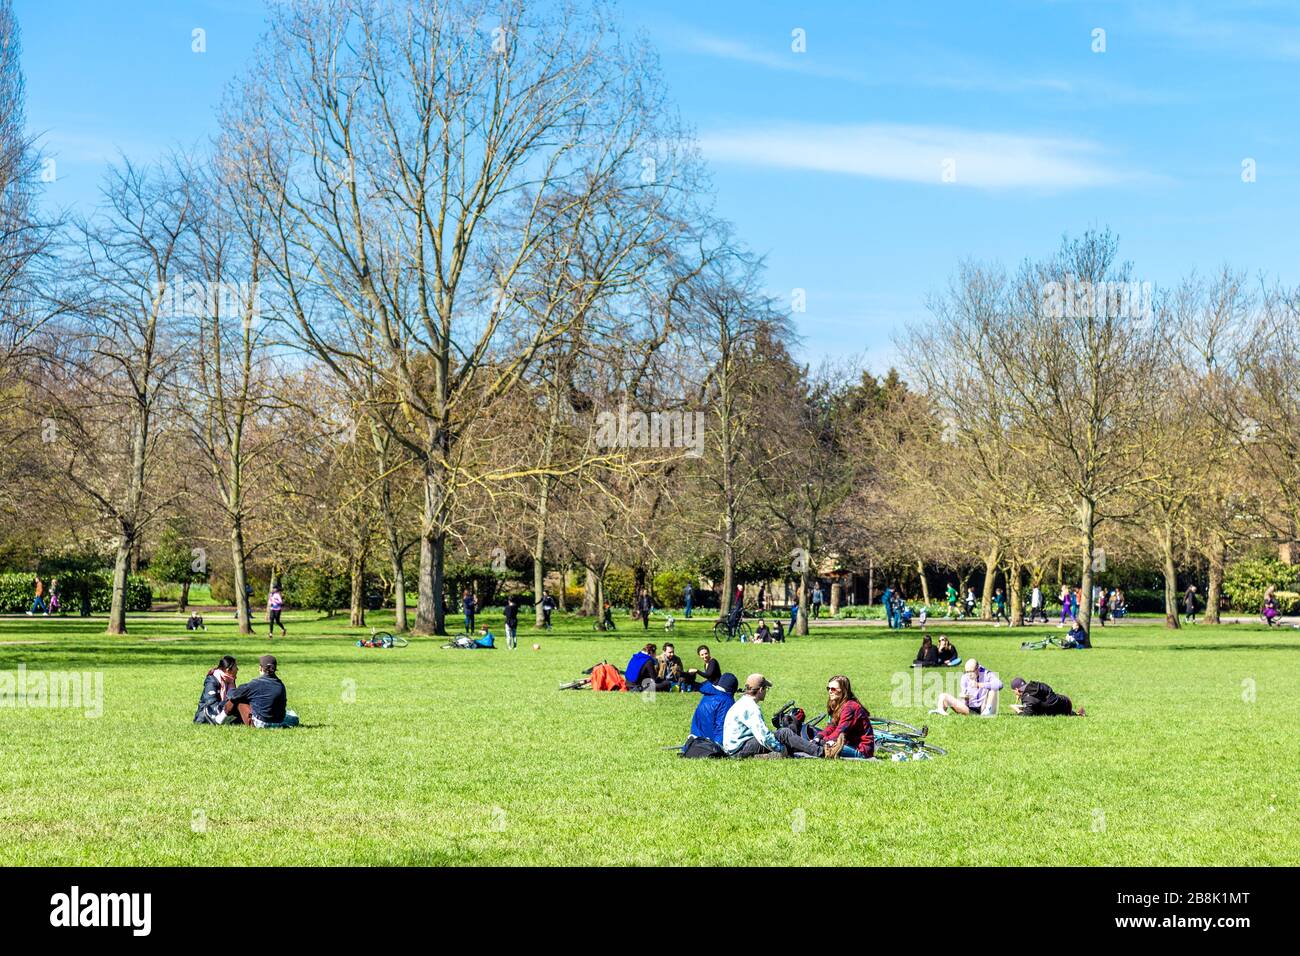 22. März 2020 - London, Großbritannien - globale Coronavirus Pandemie, große Gruppen von Menschen, die Victoria Park besuchen, obwohl die Regierung die Menschen dazu auffordert, zu Hause zu bleiben und soziale Distanzierungen zu üben, um die Ausbreitung des Coronavirus Covid-19 zu verhindern, Gruppen von Menschen, die Picknicks auf dem Gras im Park haben Stockfoto